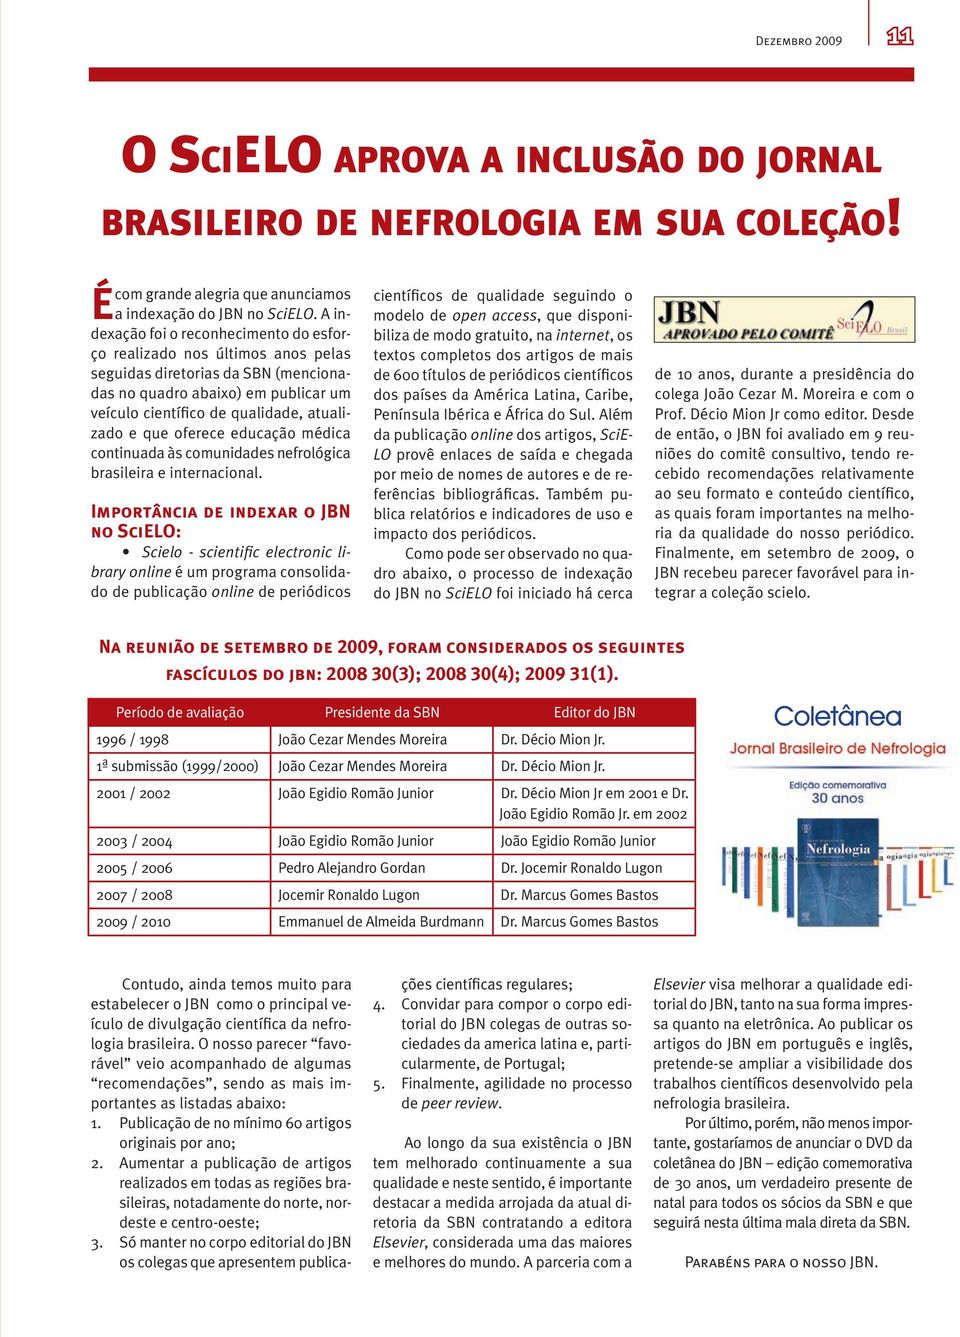 oferece educação médica continuada às comunidades nefrológica brasileira e internacional.